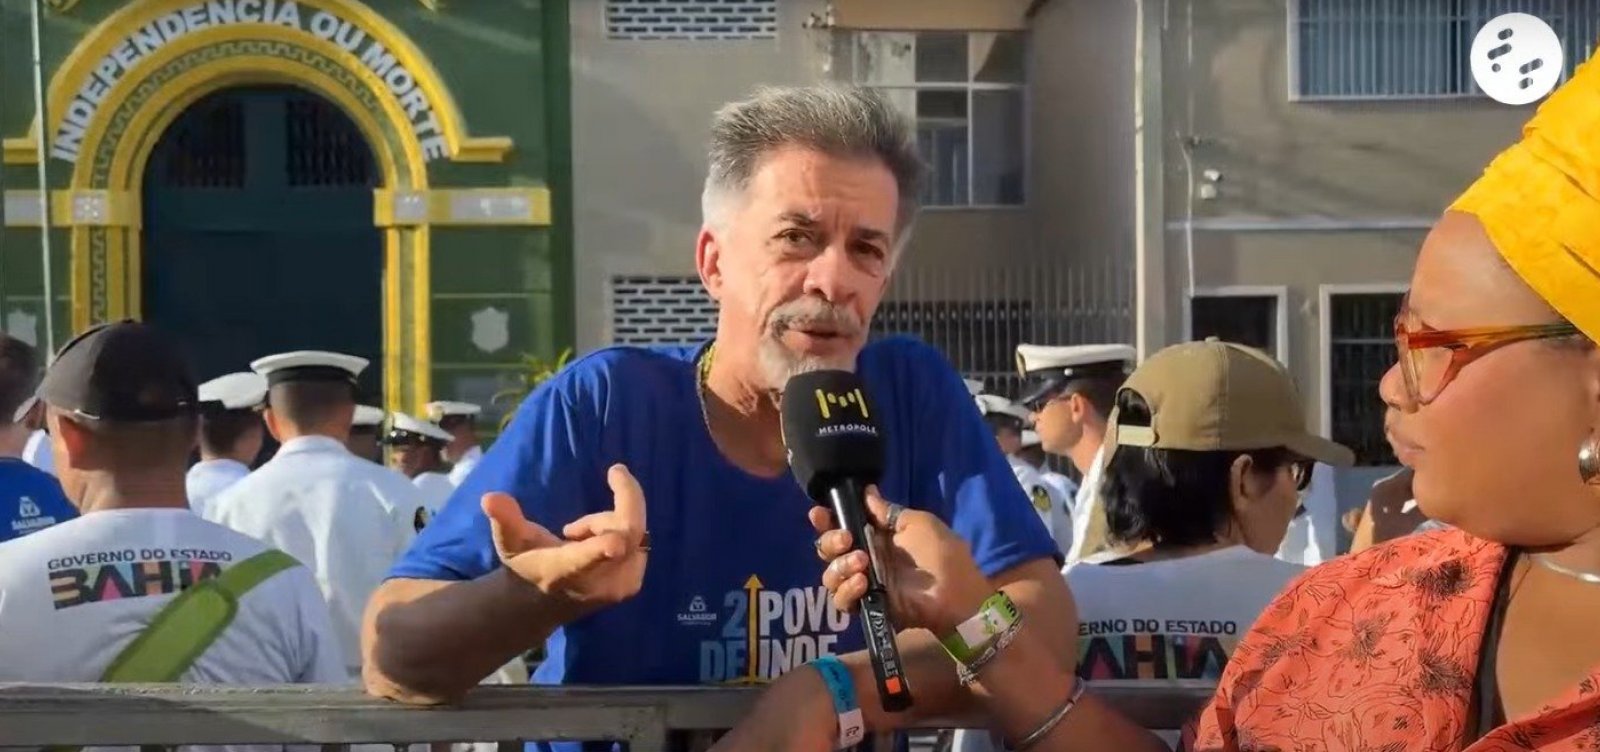 Fernando Guerreiro destaca importância popular no 2 de Julho: "quem mandou foi o povo"